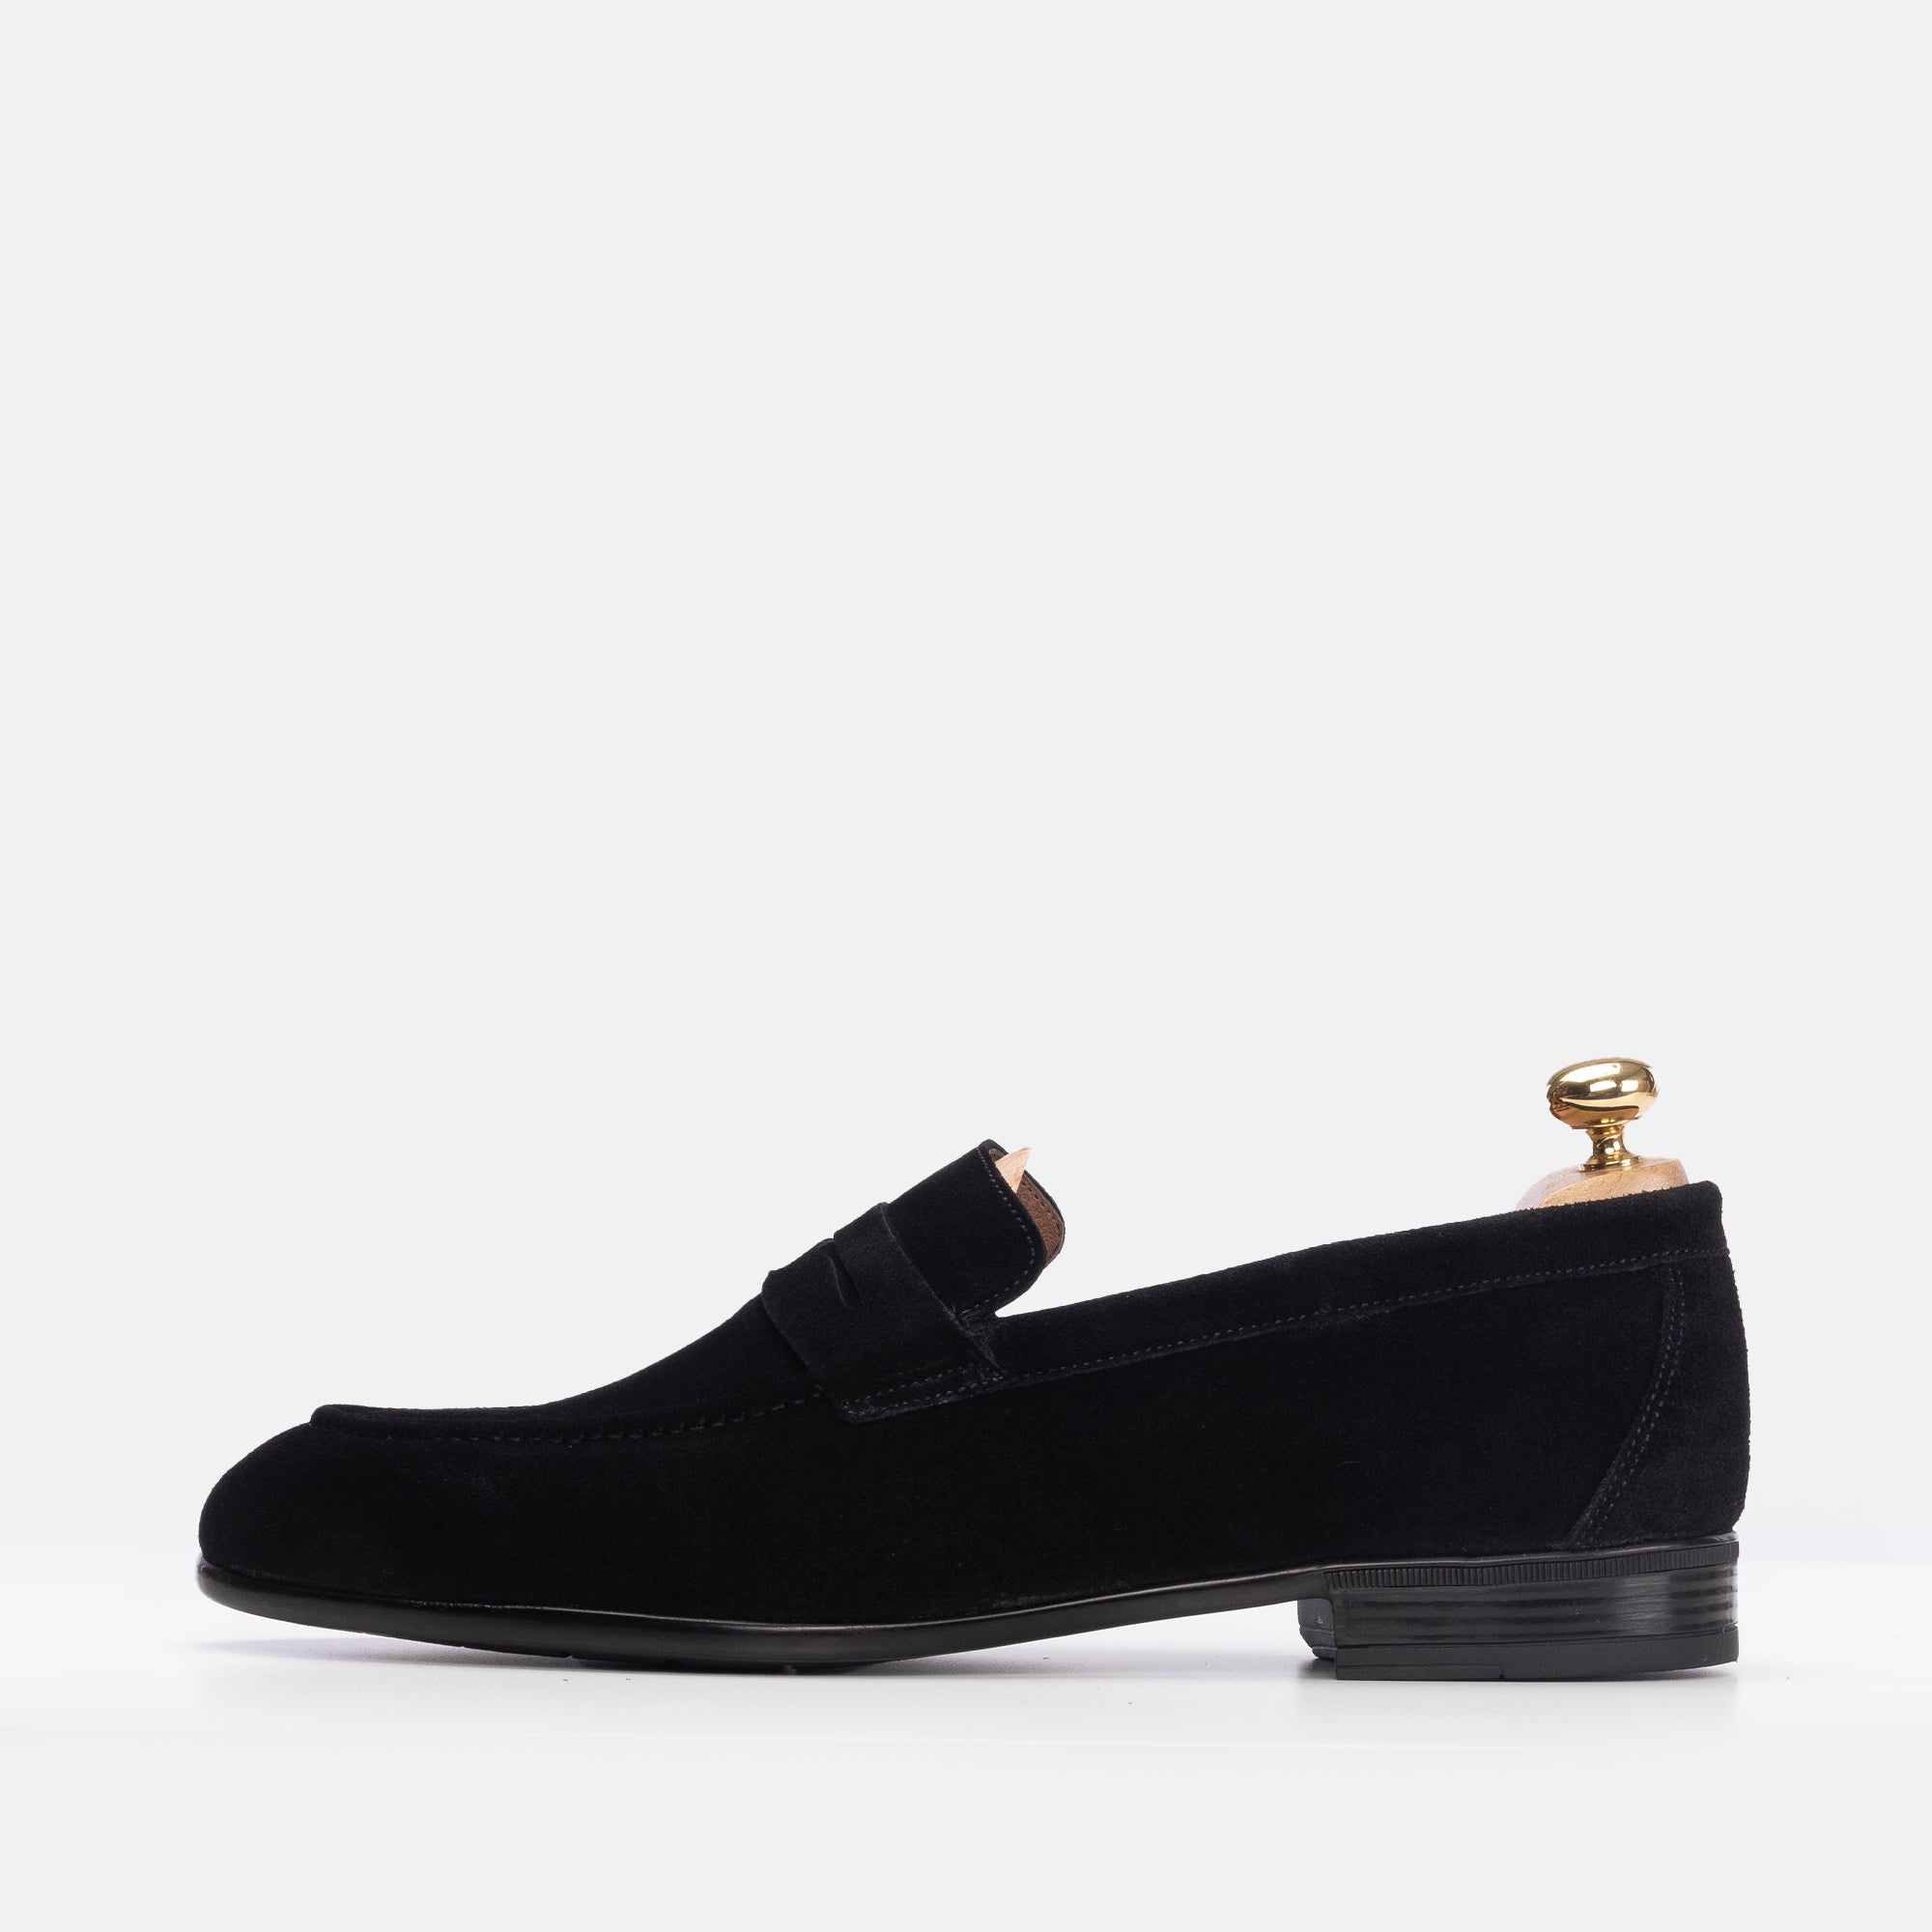 '''5209 chaussure en daim noir